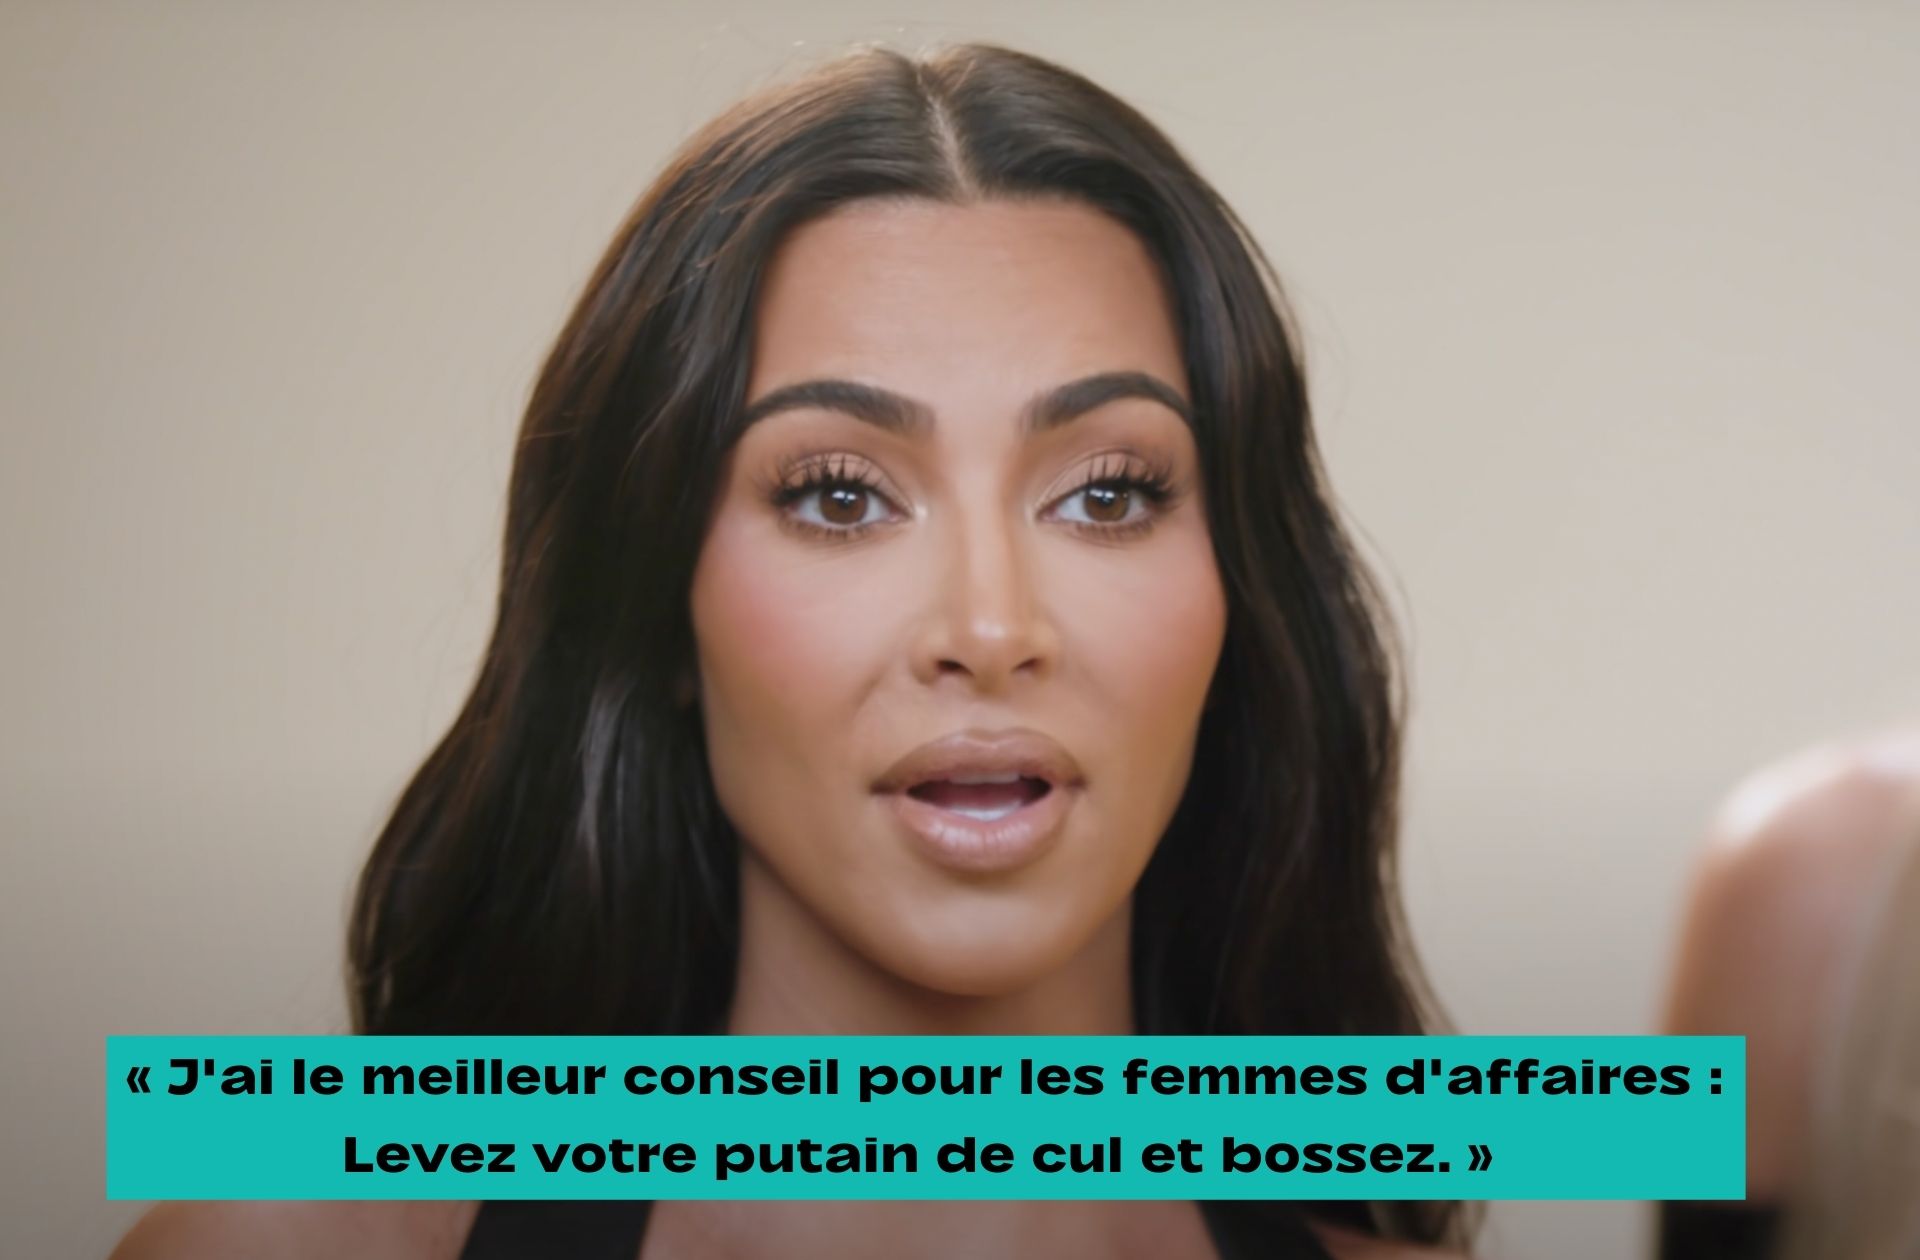 « J’ai le meilleur conseil pour les femmes d'affaires. Levez votre p*tain de cul et bossez. Il semble que personne ne veuille travailler de nos jours. » a dit Kim Kardashian a Variety.